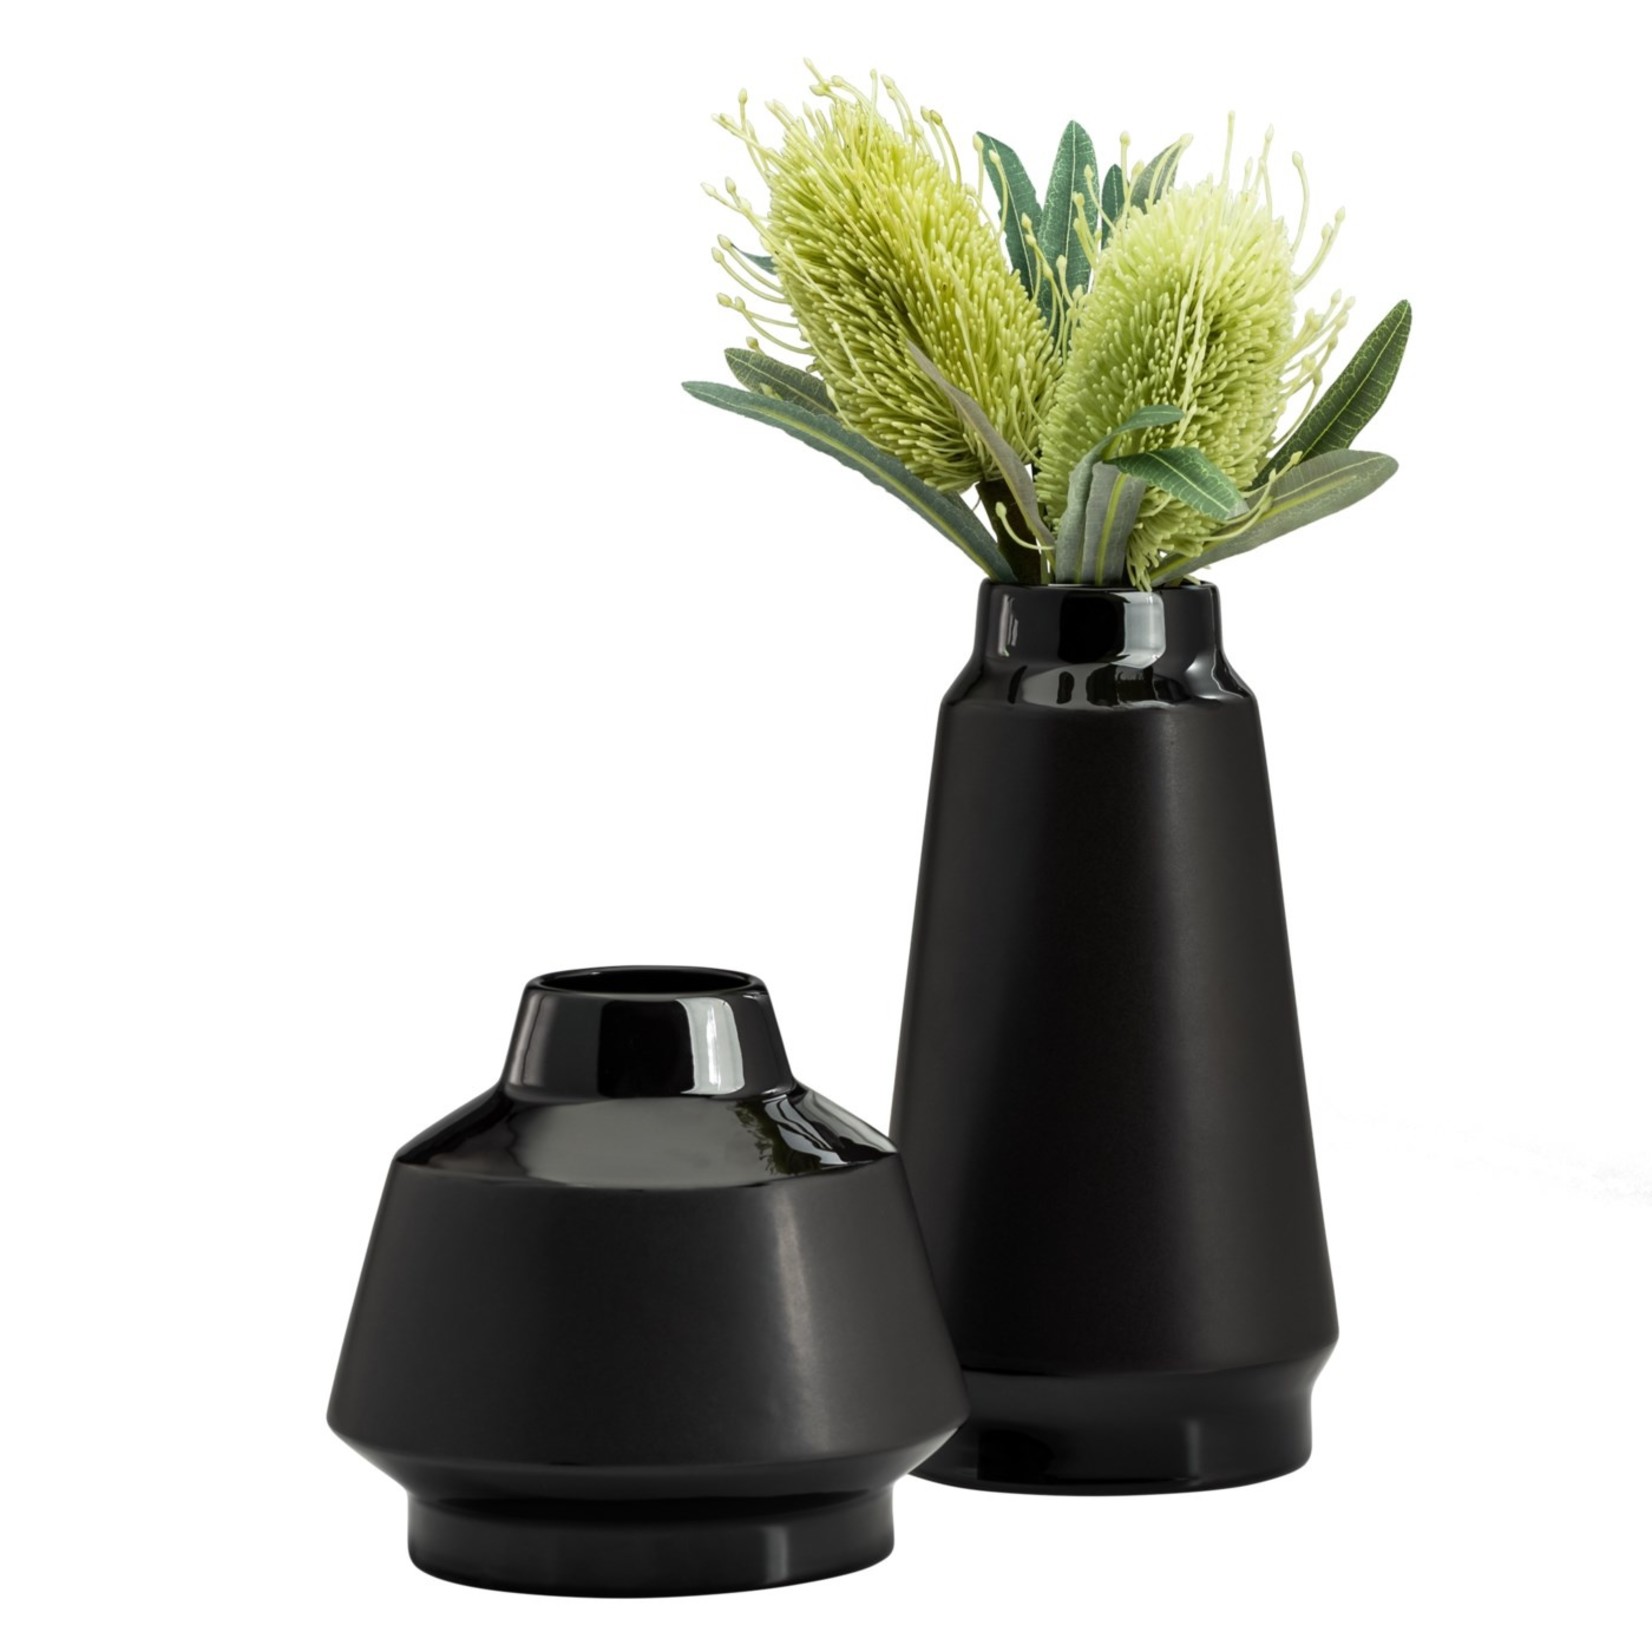 Torre & Tagus Lander Black Tapered Ceramic Vase - 7"